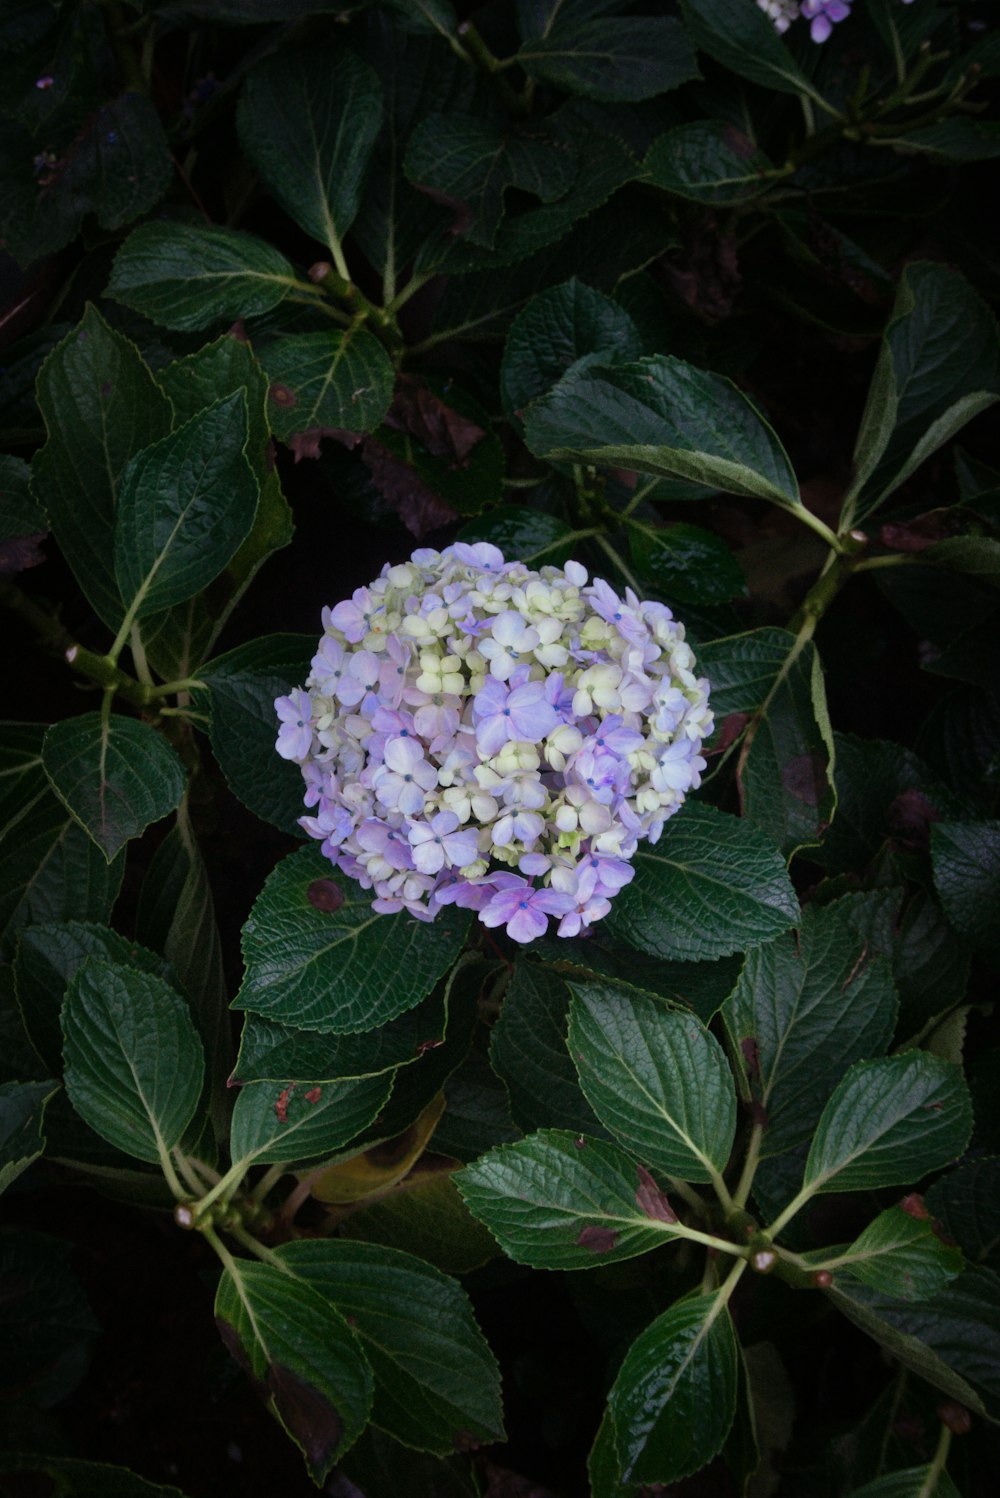 eine violette und weiße Blume, die von grünen Blättern umgeben ist